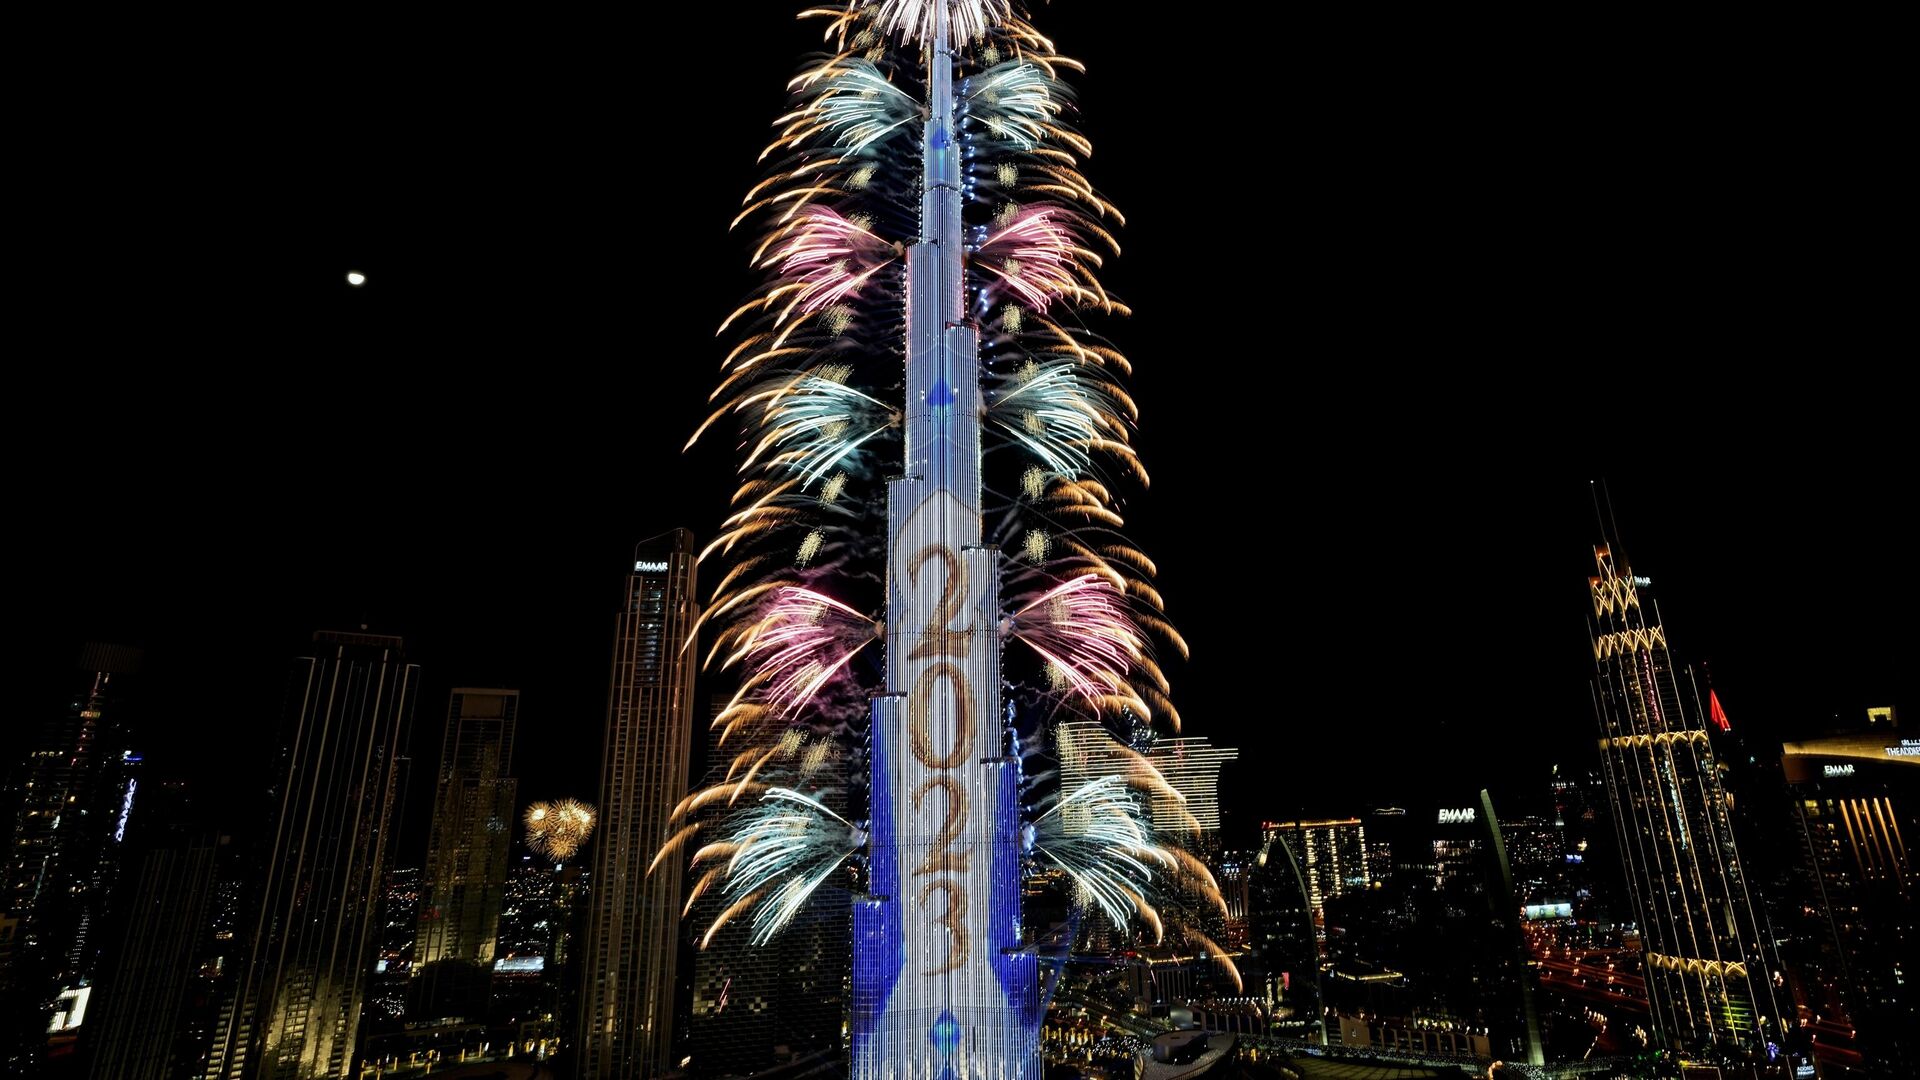 Фейерверк взрывается у Бурдж-Халифа, самого высокого здания в мире, во время празднования Нового года в Дубае, Объединенные Арабские Эмираты, в воскресенье, 1 января 2023 года - Sputnik Беларусь, 1920, 01.01.2023